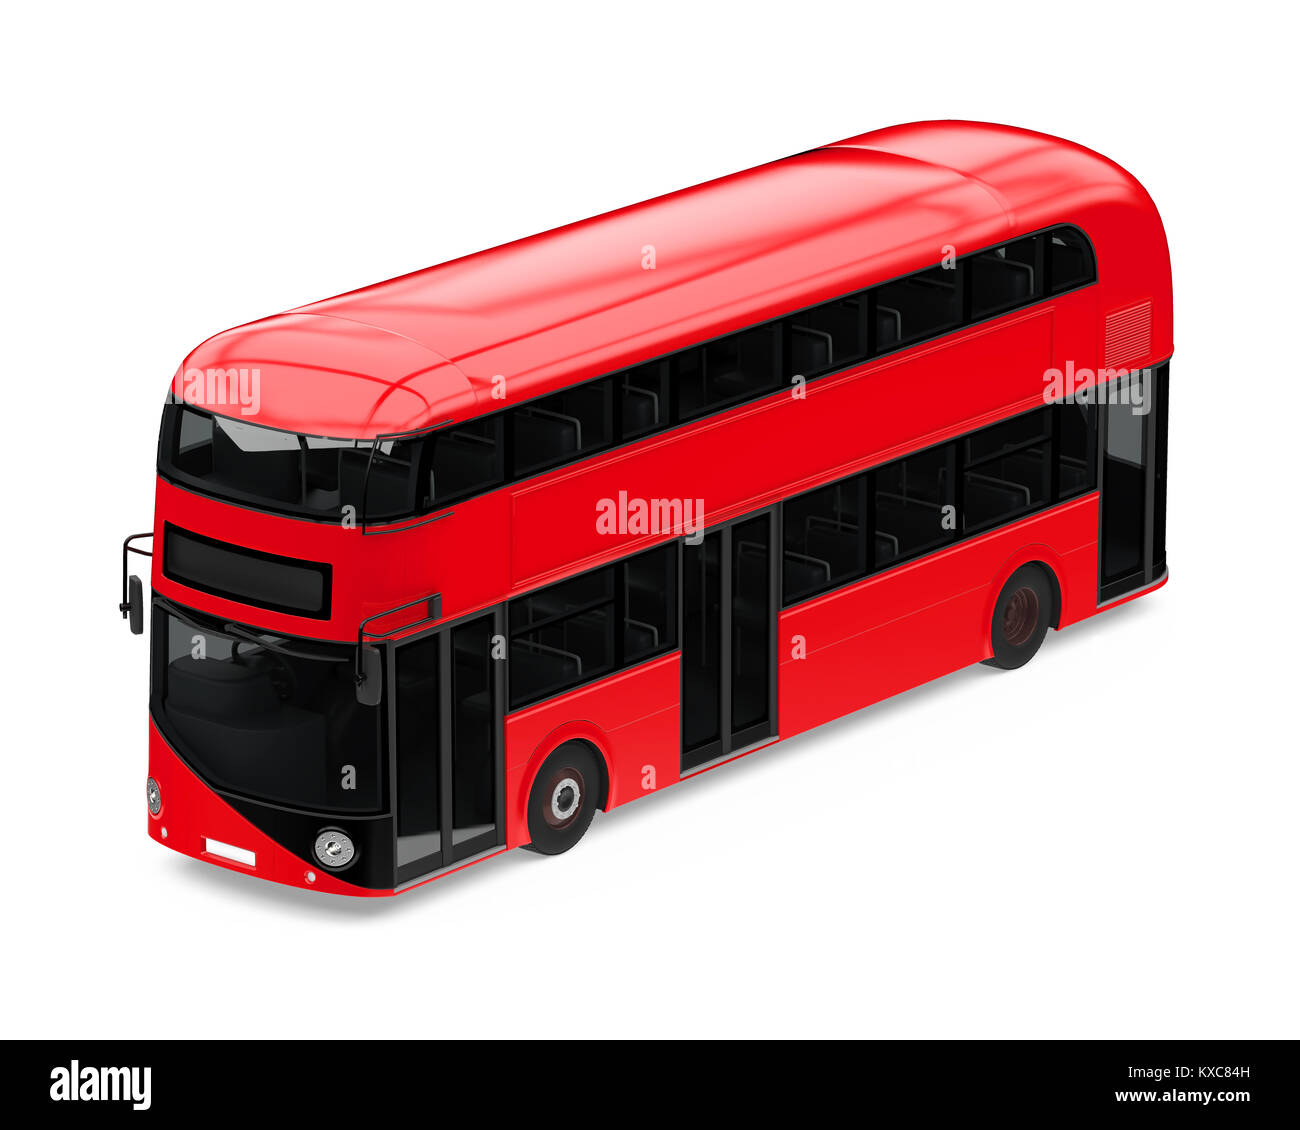 New London bus à double étage isolé Banque D'Images